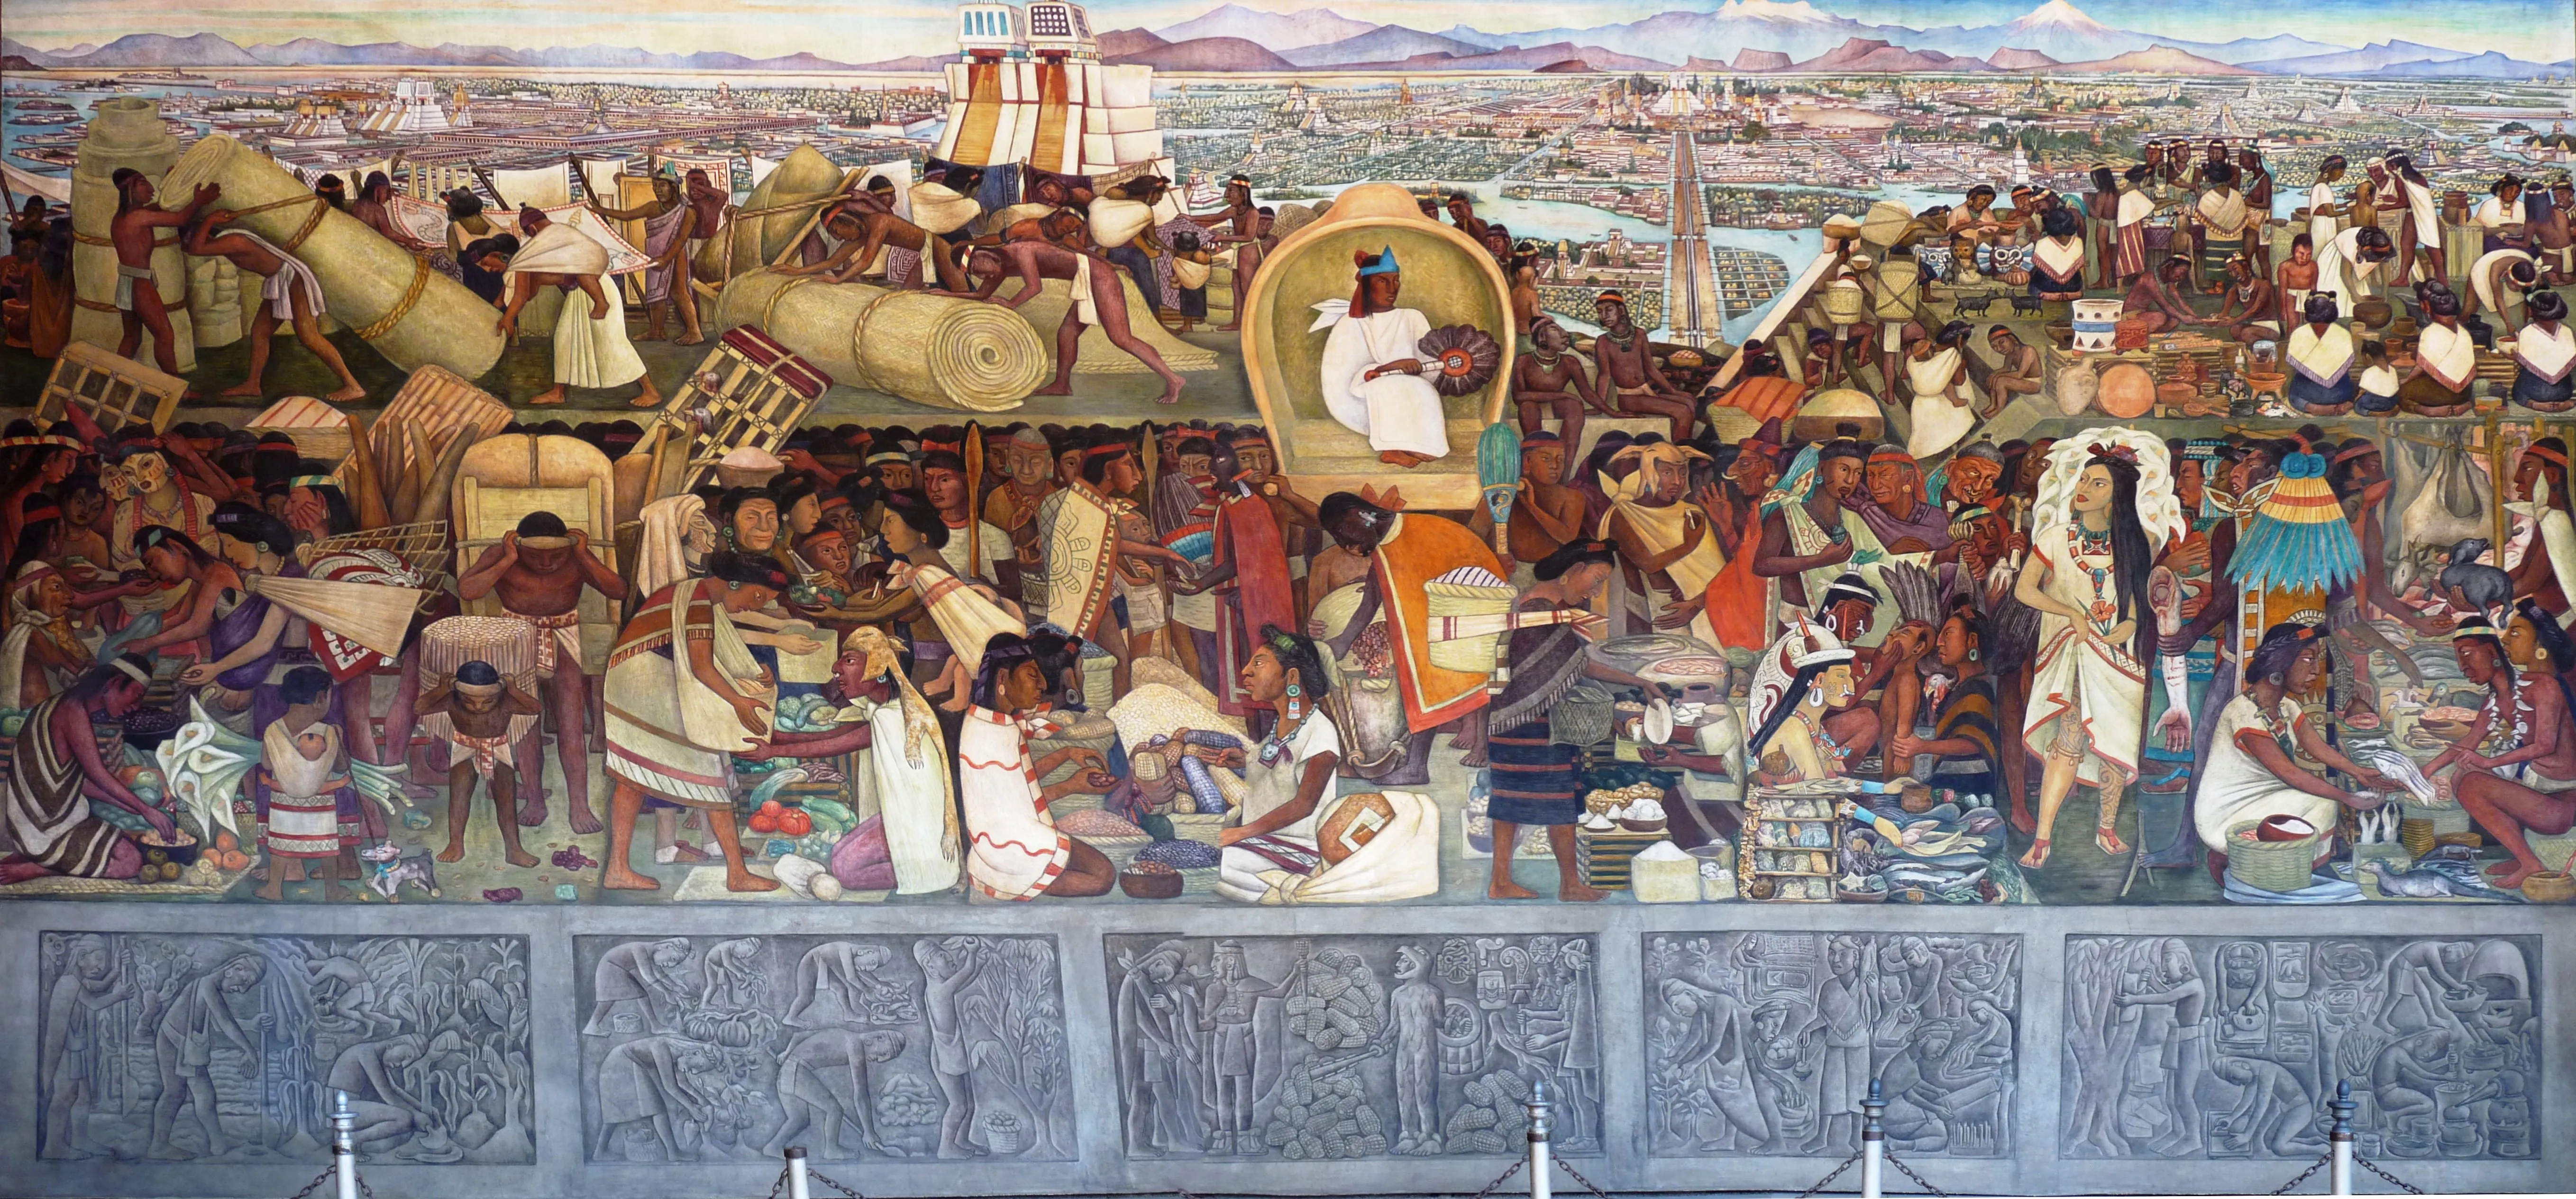 La Gran Ciudad de Tenochtitlan par Diego Rivera, Palacio Nacional de México, 1945.